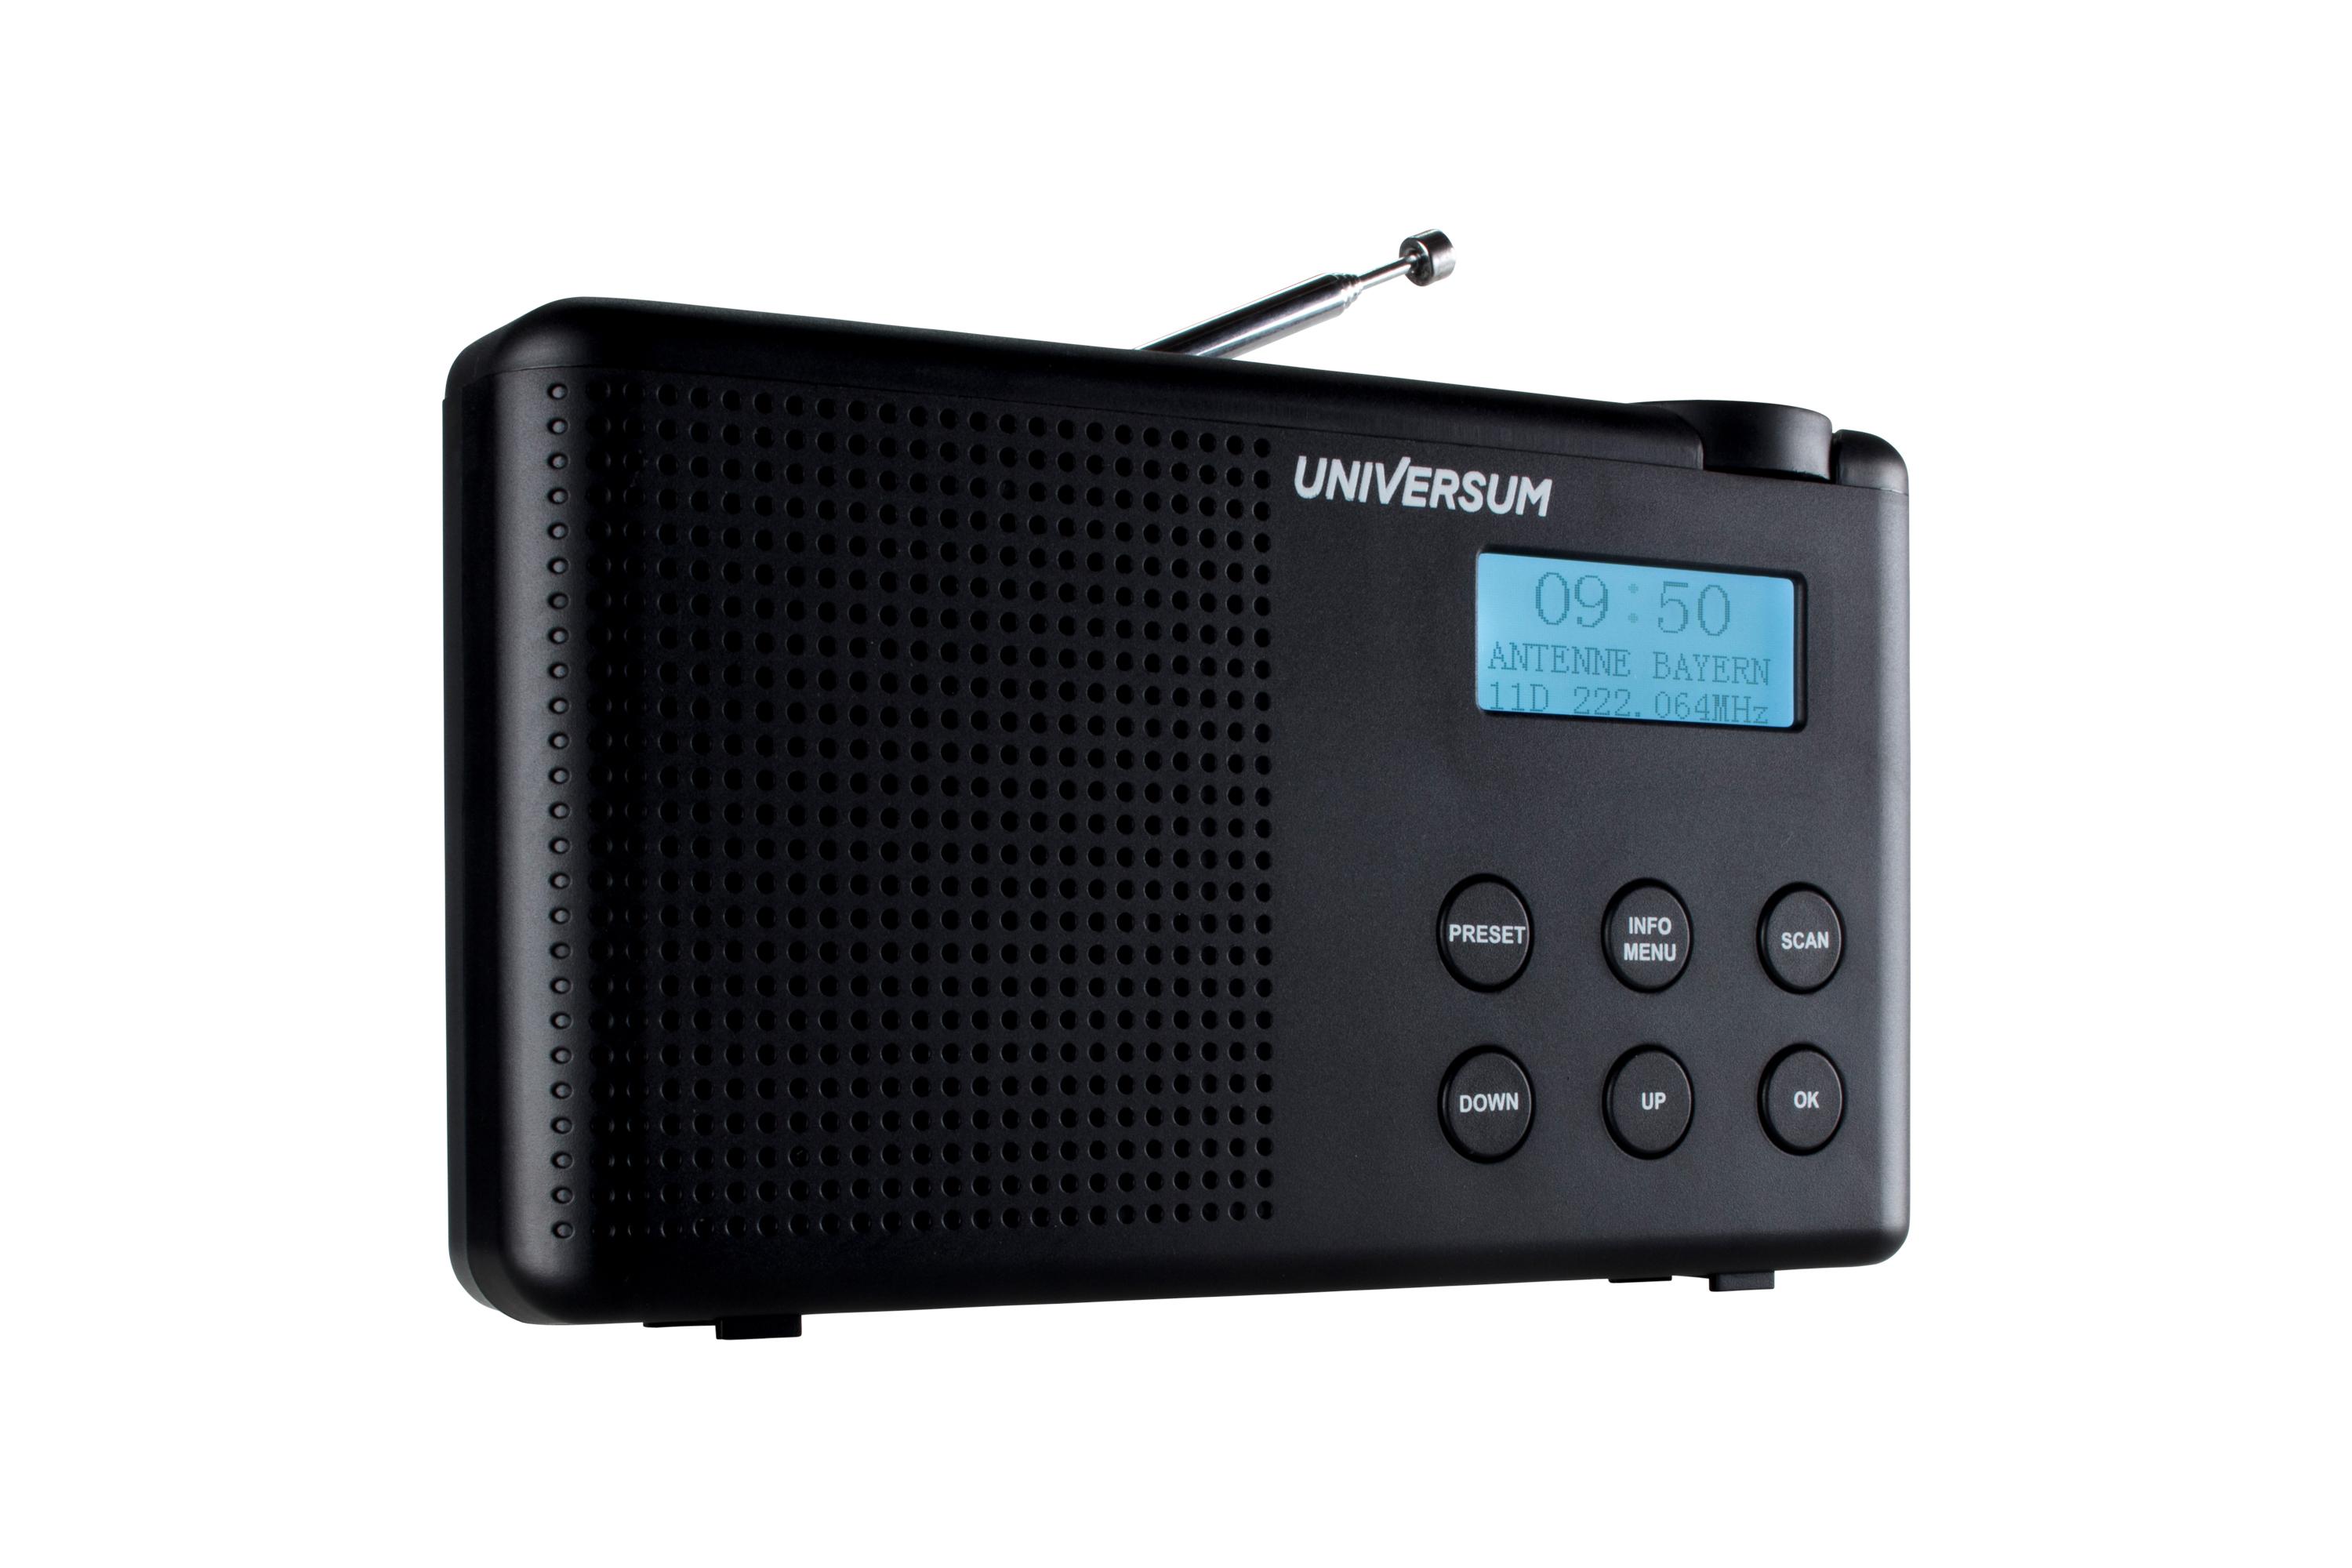 UNIVERSUM DR 200-20 DIGITALRADIO, DAB+, FM, FM, DAB, DAB, schwarz Bluetooth